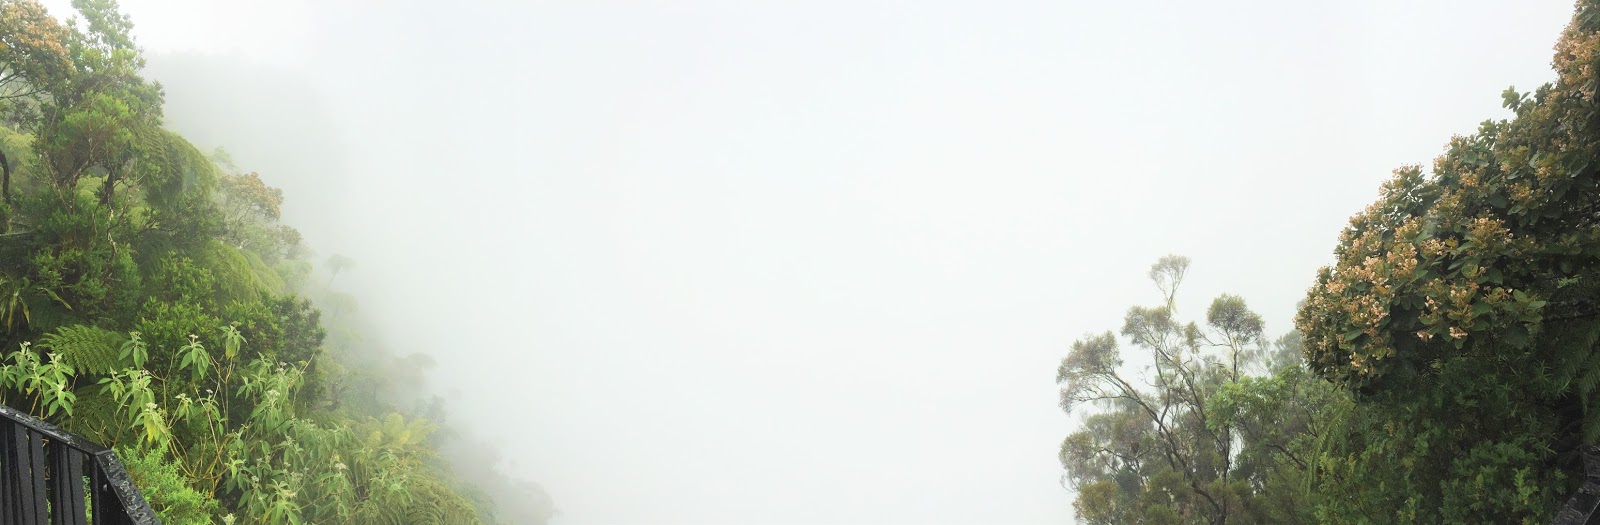 gotoreunion vacances holidays île de la réunion 974 océan indien randonnée trou de fer sentier bélouve bébour salazie rando marcheurs que faire idée sport marche les gommettes de melo vue panorama panoramique brume brouillard temps météo 